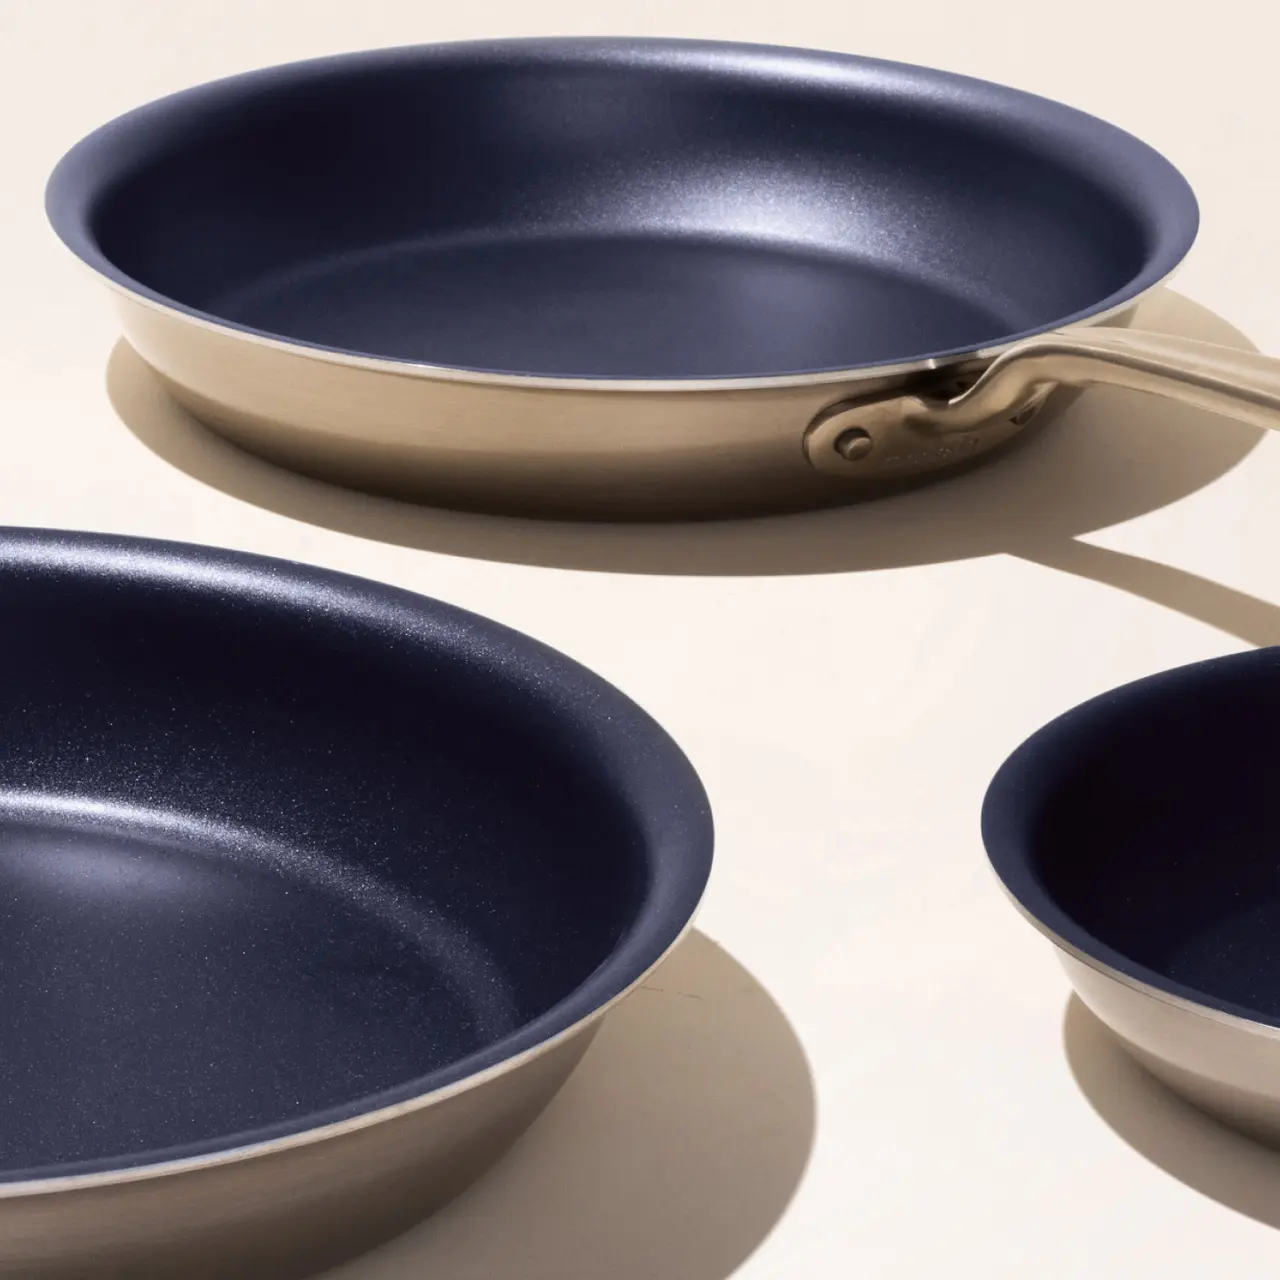 8 Blue Ceramic Frying Pan - Whisk